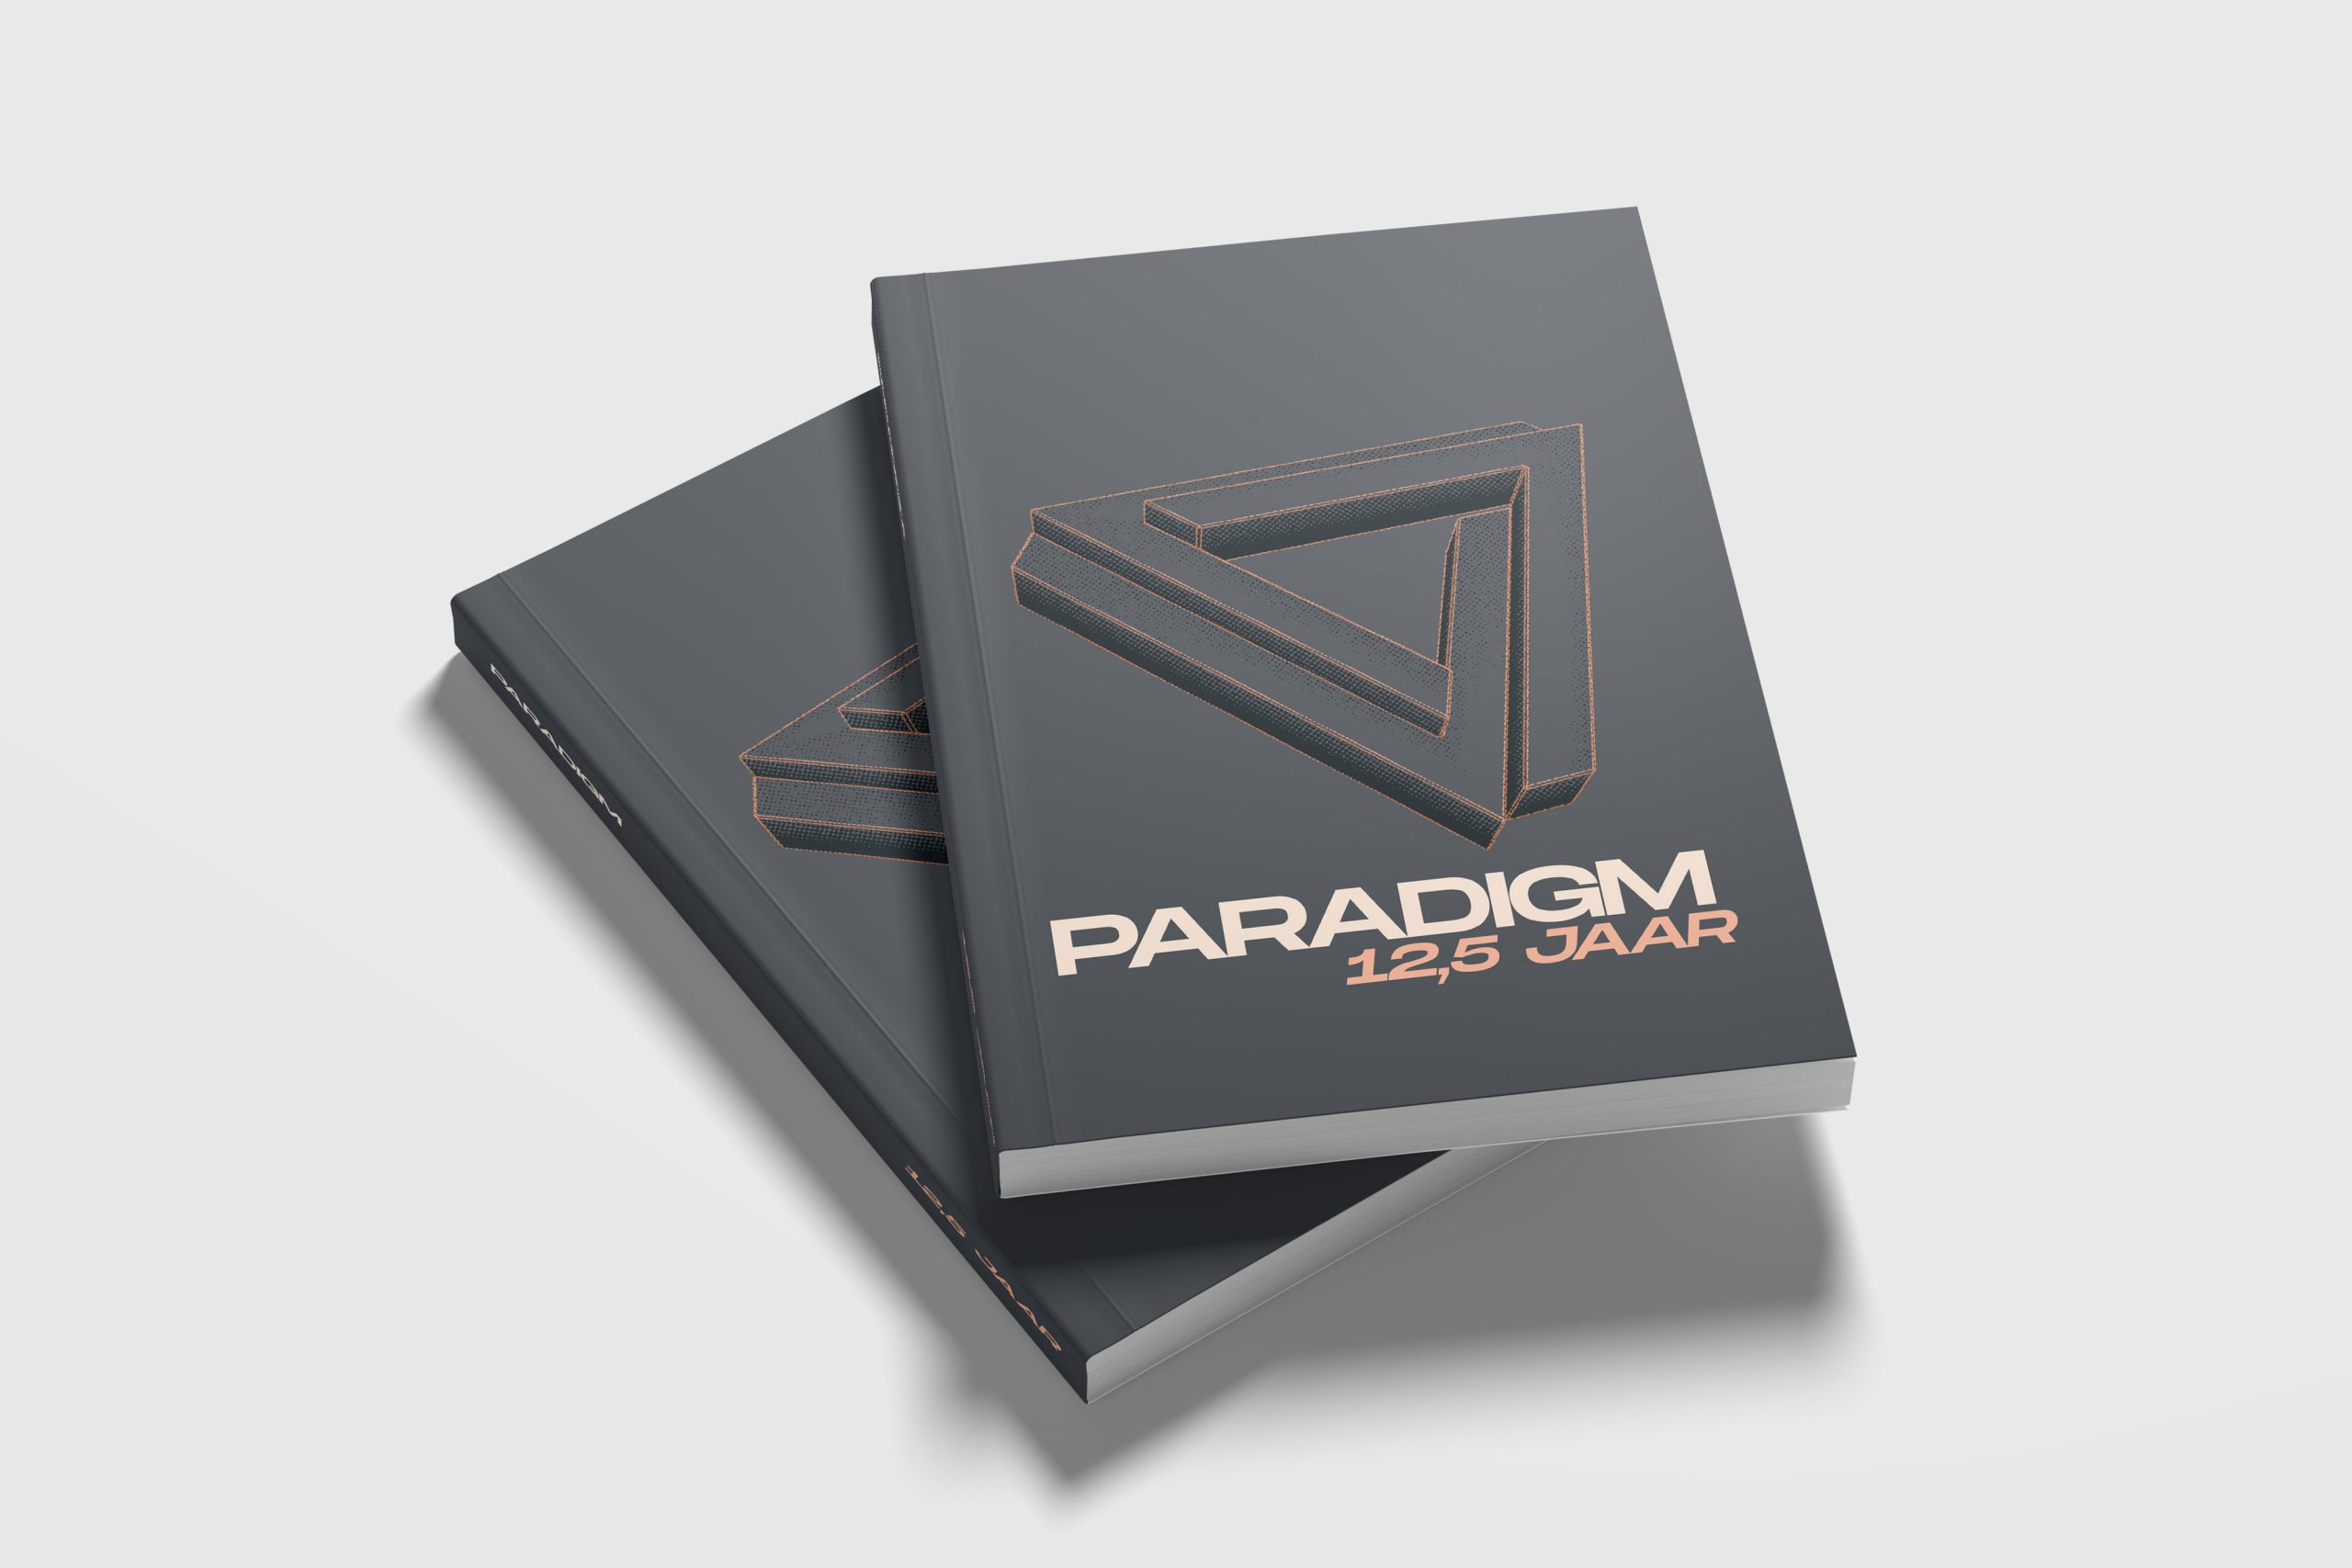 Order our book Paradigm 12,5 jaar